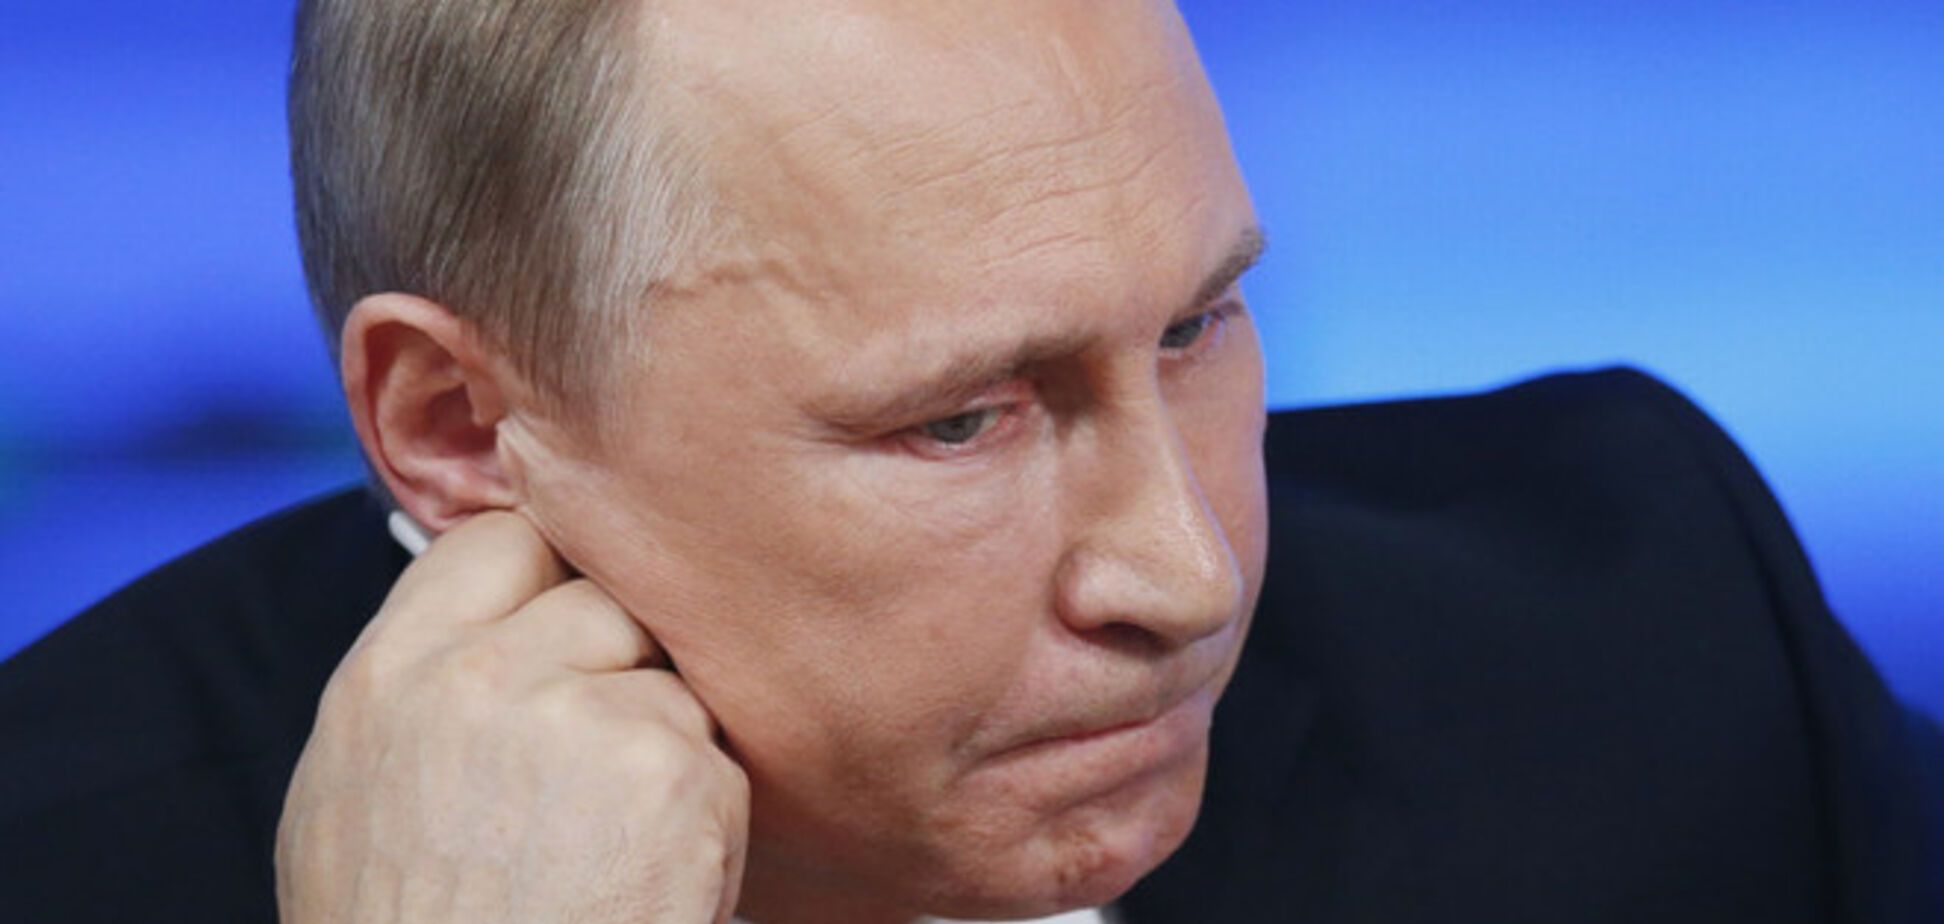 Поняття вигоди в голові у Путіна давно витіснене 'сакральністю' - колишній віце-прем'єр РФ